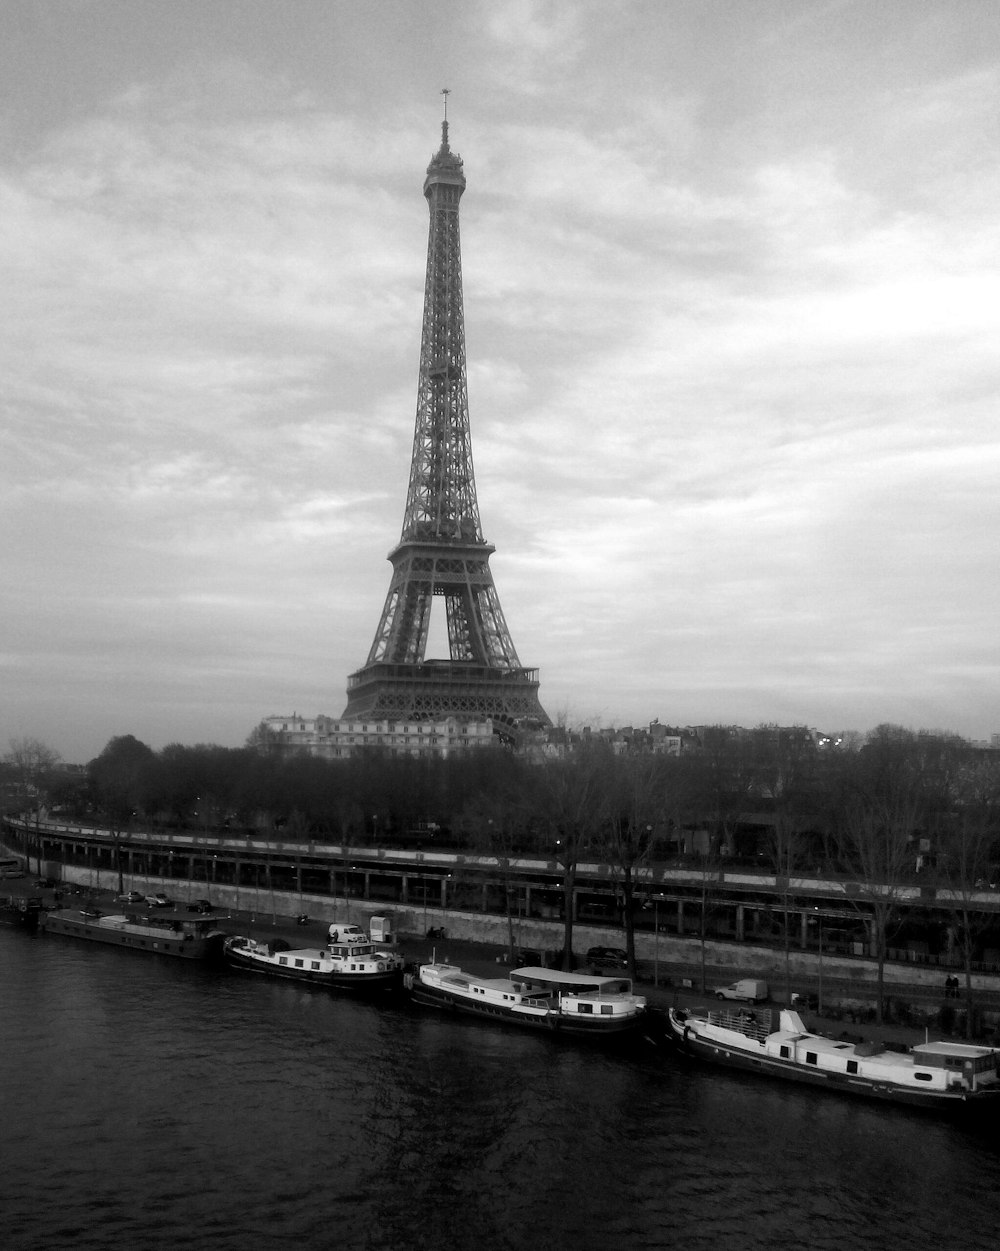 foto in scala di grigi della torre Eiffel e delle barche attraccate vicino al molo